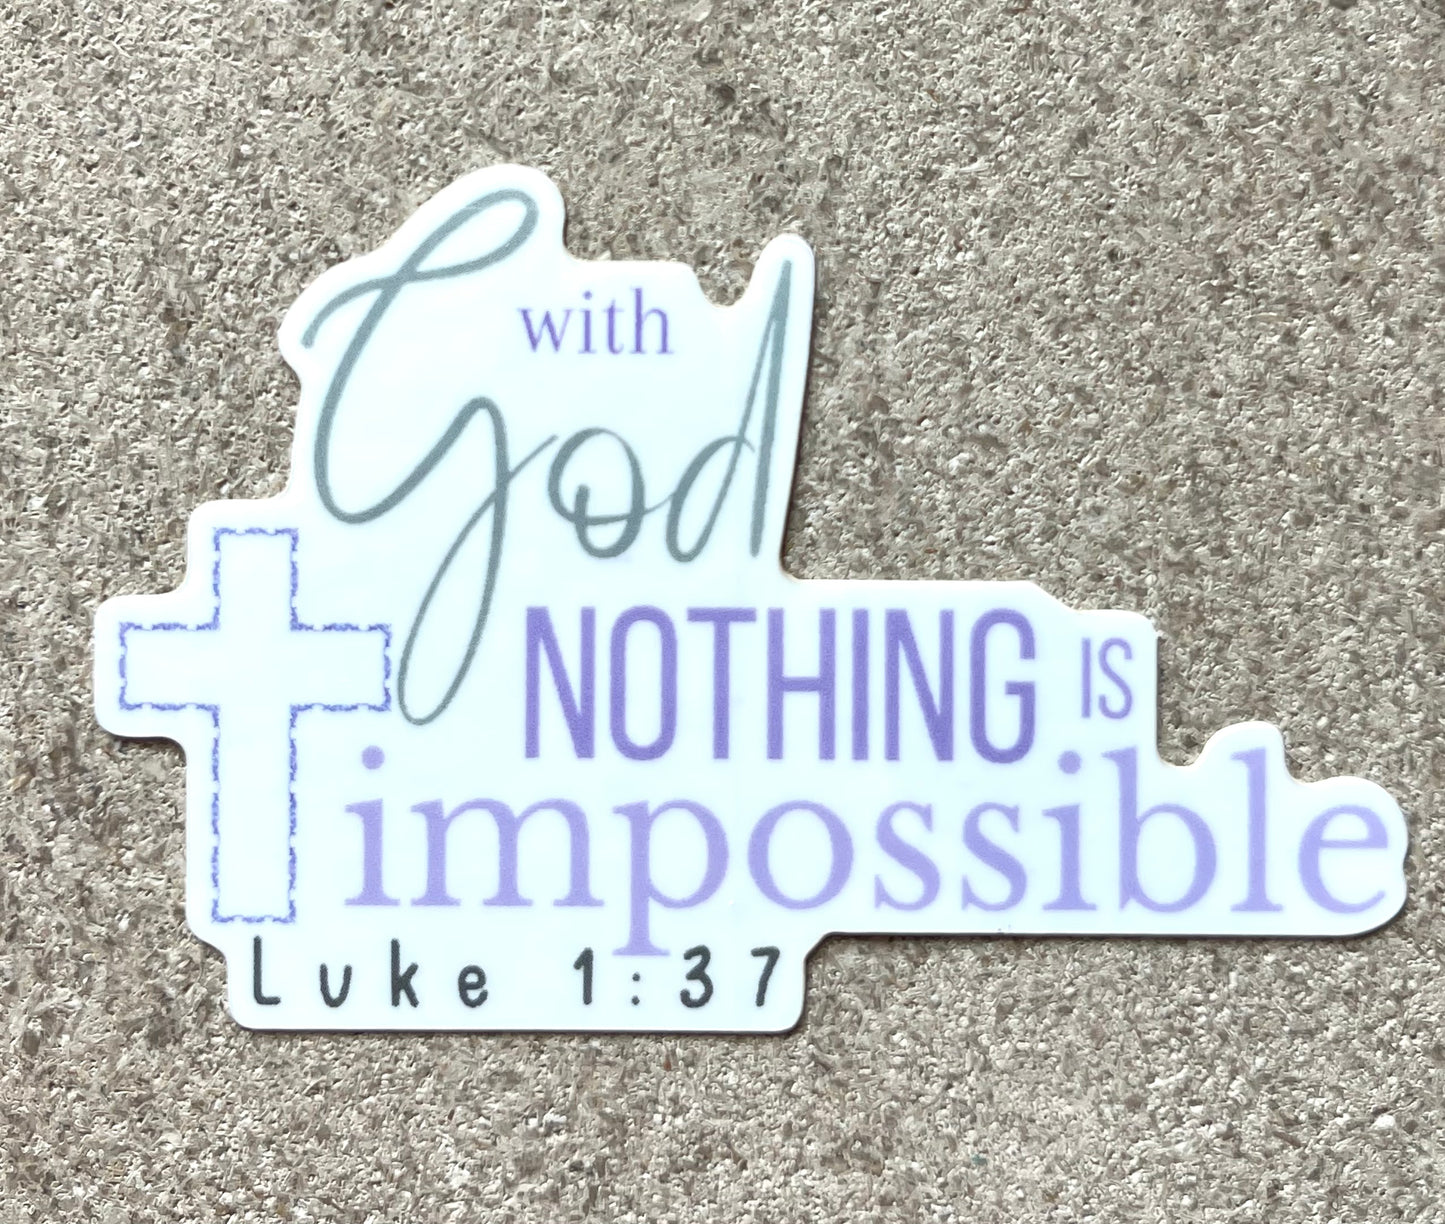 Luke 1:37 sticker